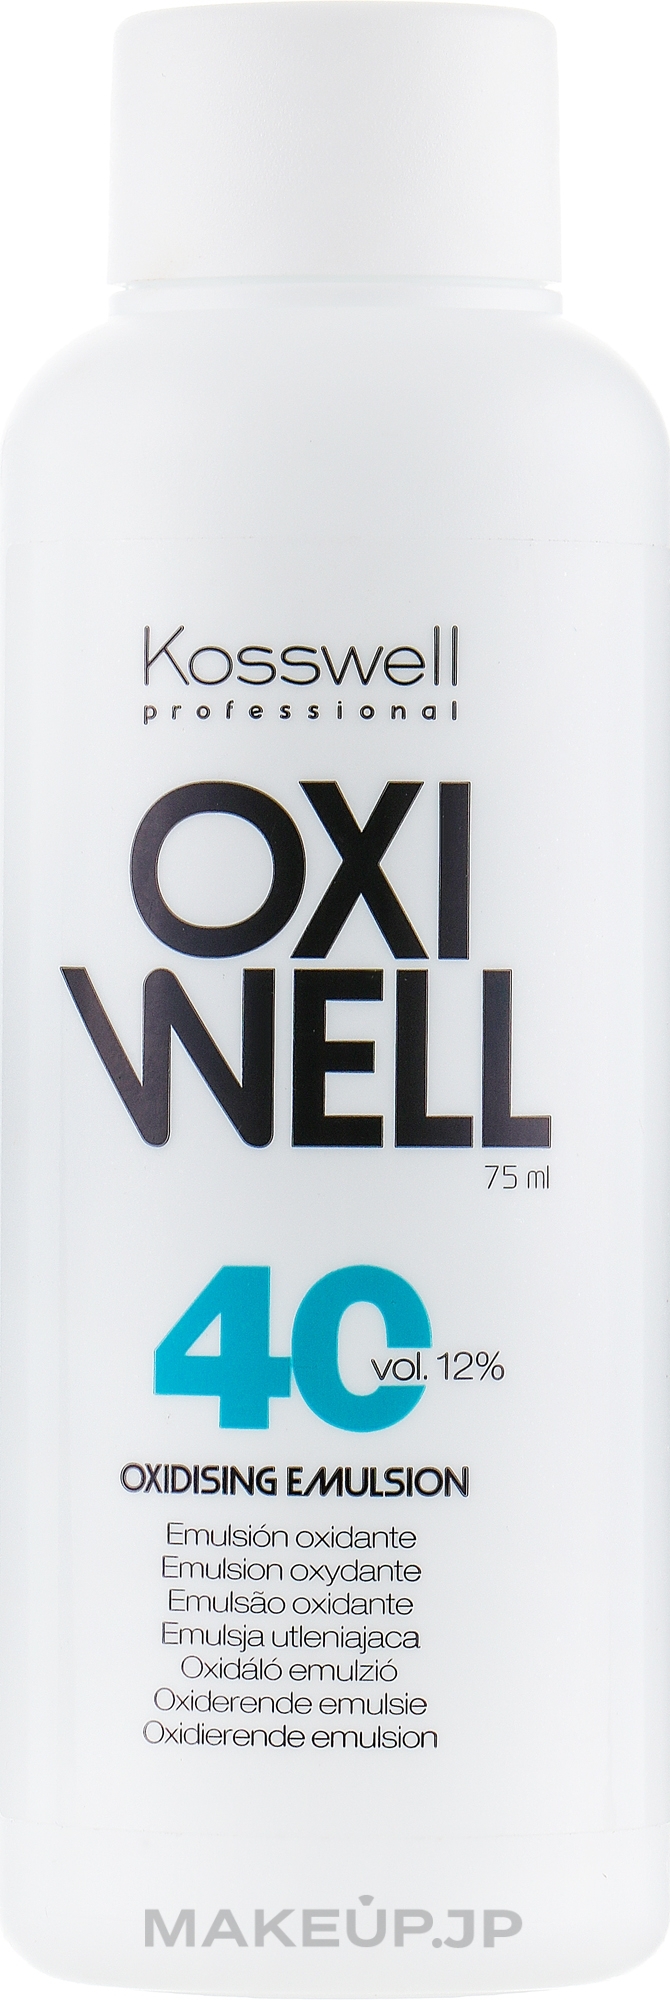 Oxidizing Emulsion 12% - Kosswell Professional Oxidizing Emulsion Oxiwell 12% 40 vol — photo 75 ml